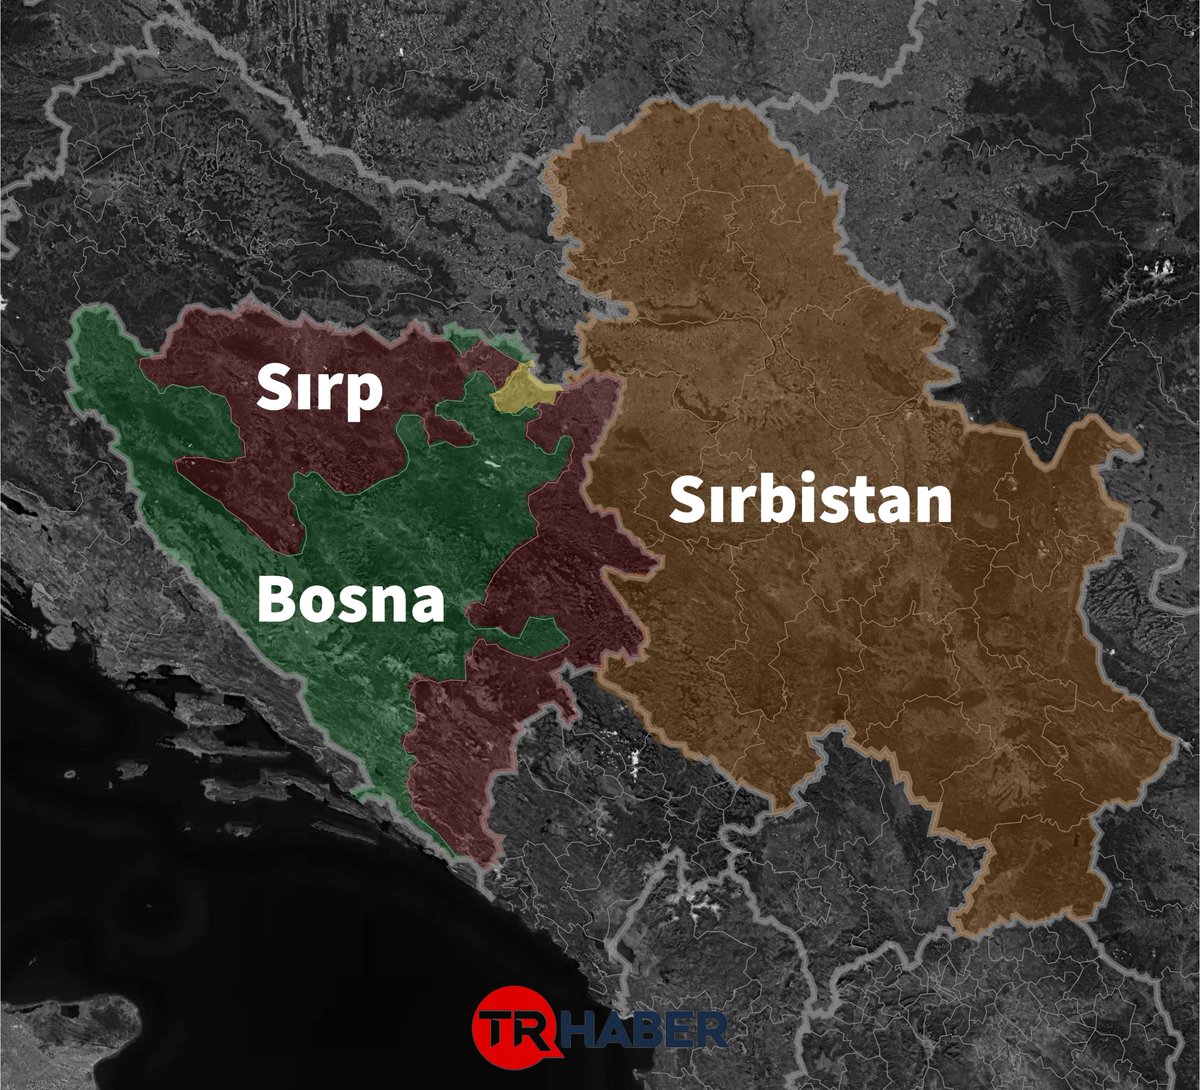 Bosna-Hersek bölünme tehlikesi ile karşı karşıya!

📌Bosna-Hersek'te bulunan Sırp cumhuriyetinin lideri Dodik, BM'nin Srebrenitsa kararı sonrası Bosna'ya İki taraflı ayrılık önereceklerini açıkladı.

🗣️Sırp Cumhurbaşkanı Dodik:

“BM'nin Srebrenitsa kararıyla birlikte Bosna